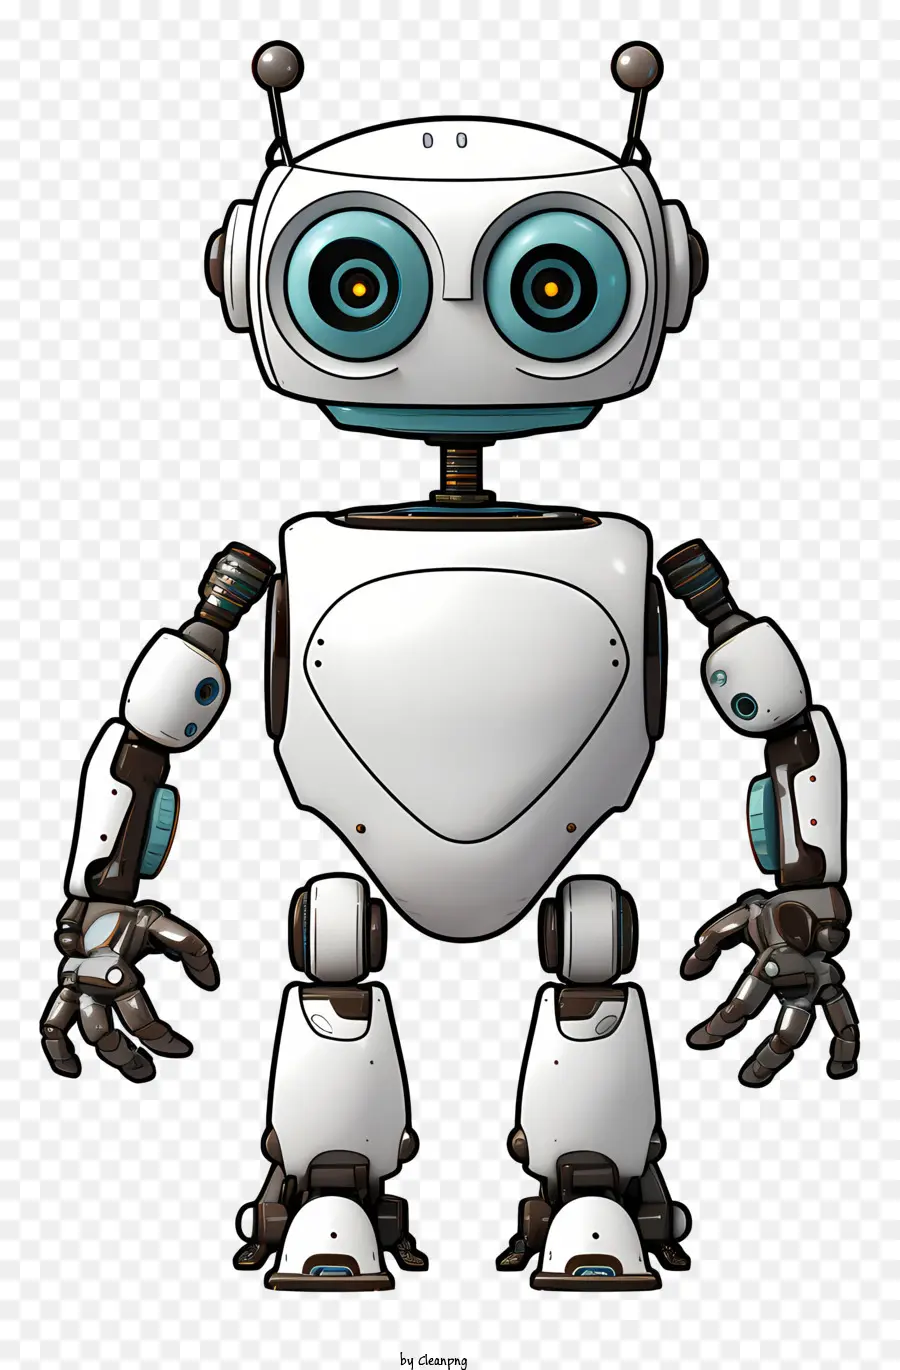 Robot trắng và đen mắt lớn miệng đứng trên hai chân - Robot trắng và đen cười với các tính năng màu xanh